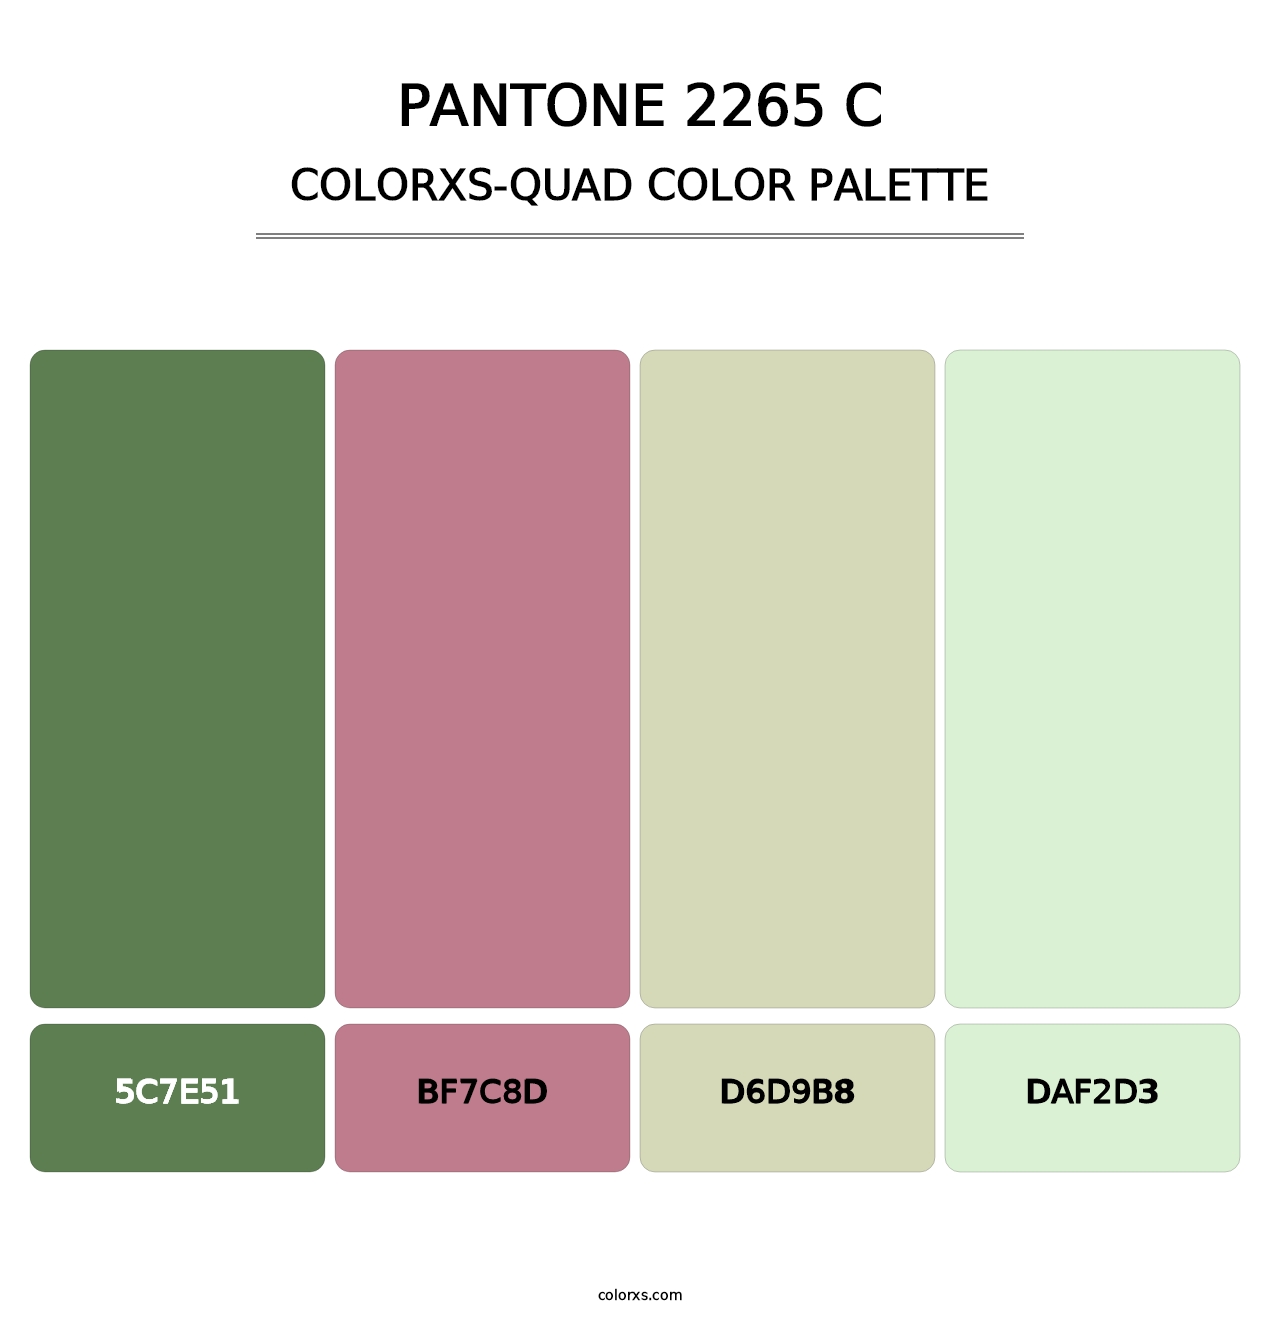 PANTONE 2265 C - Colorxs Quad Palette